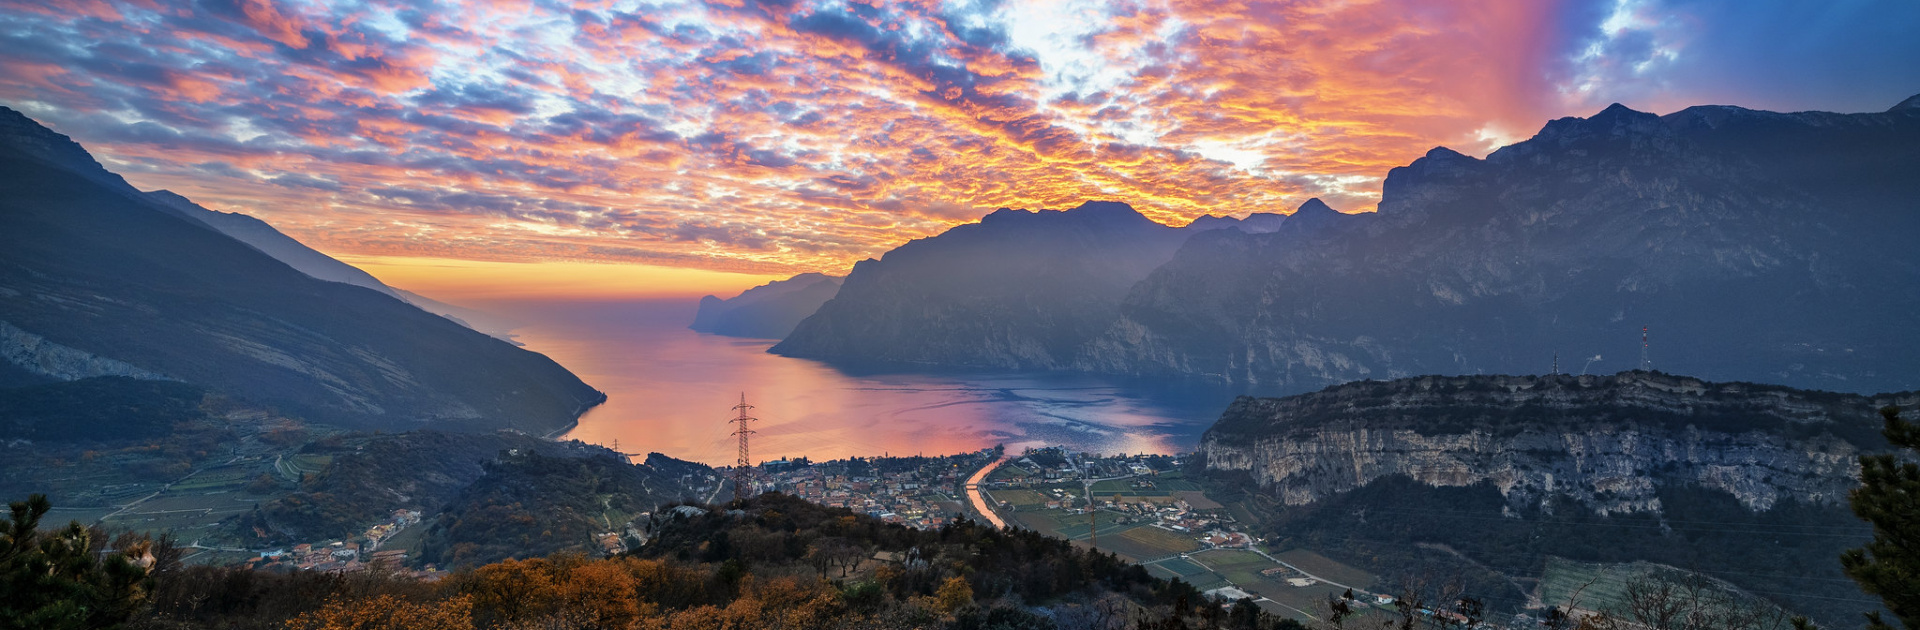 Viaggio fotografico nel Garda Trentino - Preparazione informativa e pratica